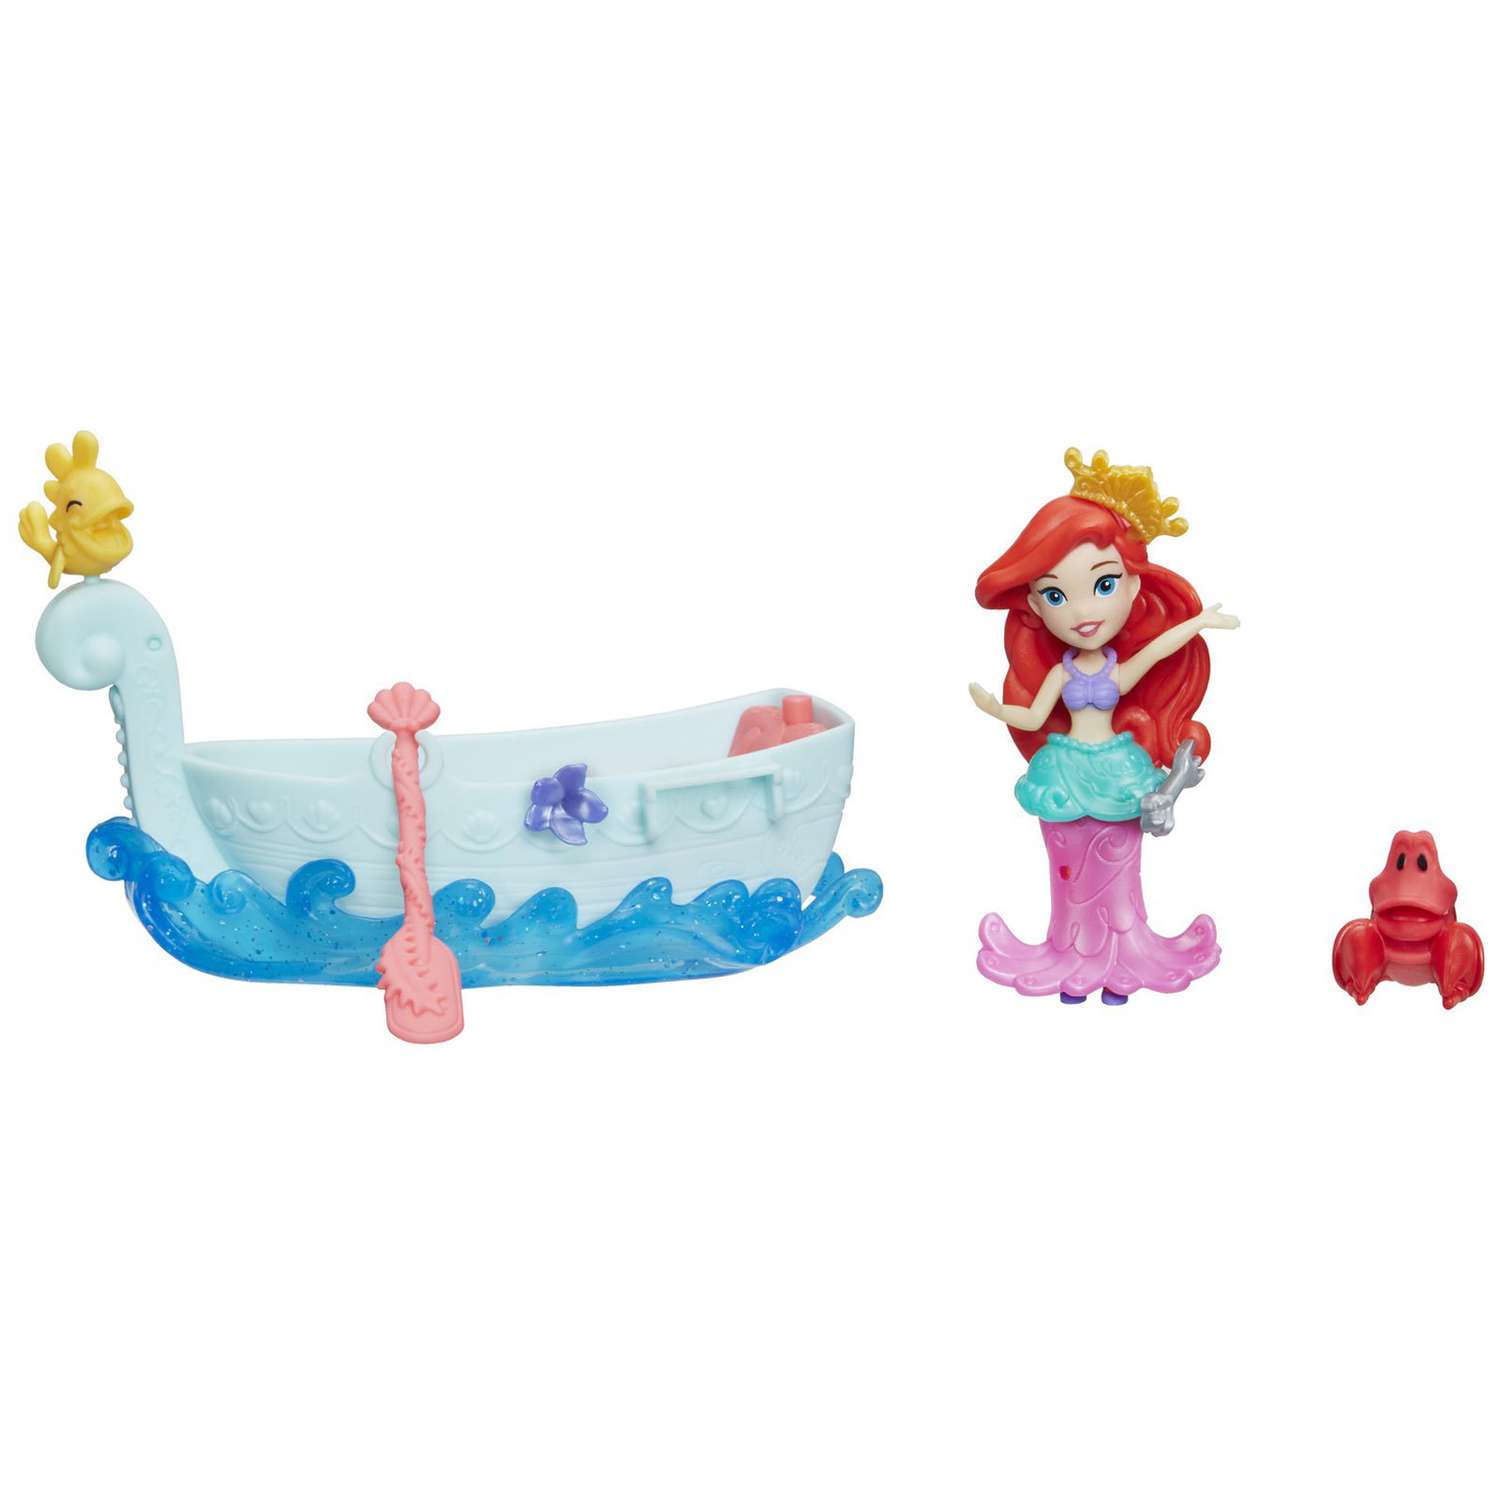 Набор Princess Disney Фигурка и лодка в ассортименте E0068EU4 E0068EU4 - фото 2